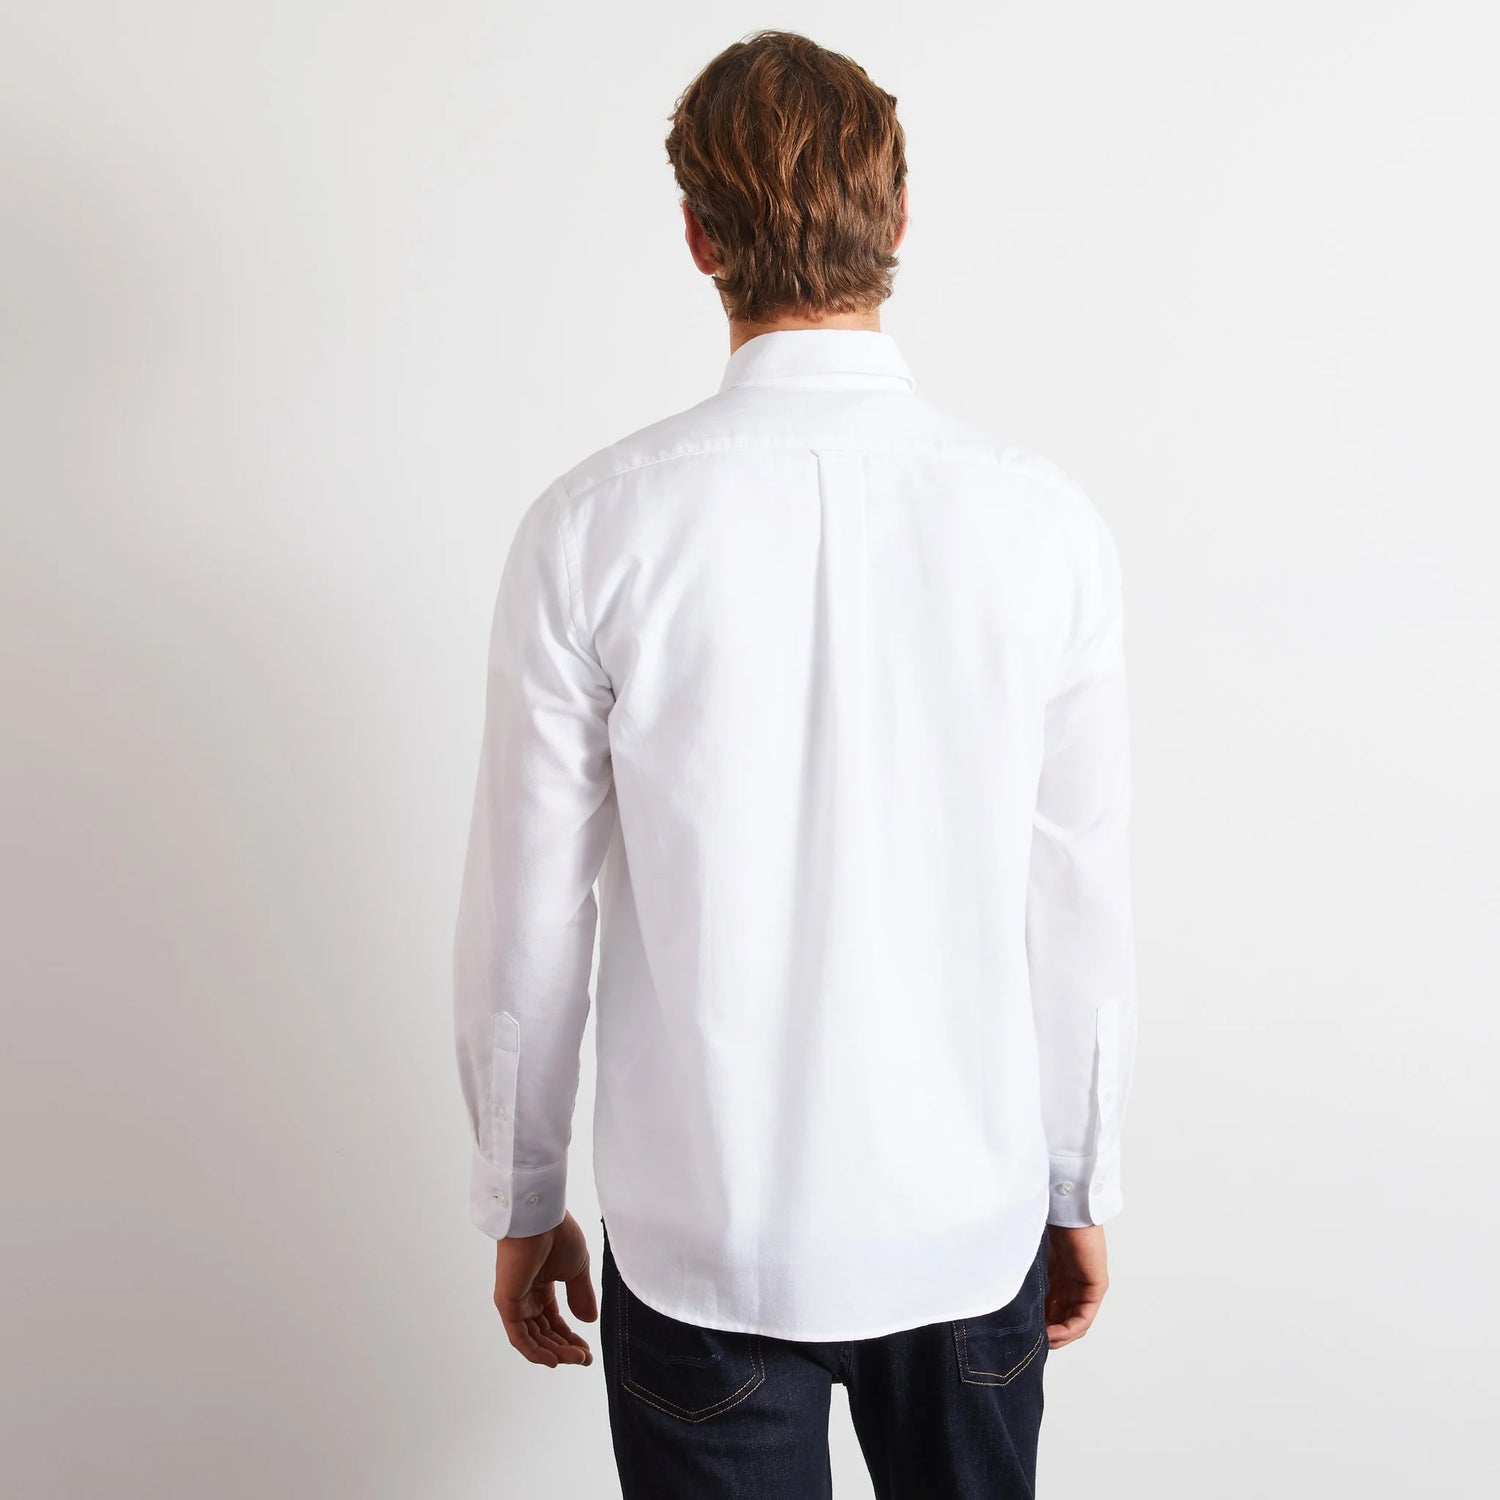 plain-white-cotton-shirt_ppshiche0020_bc_04